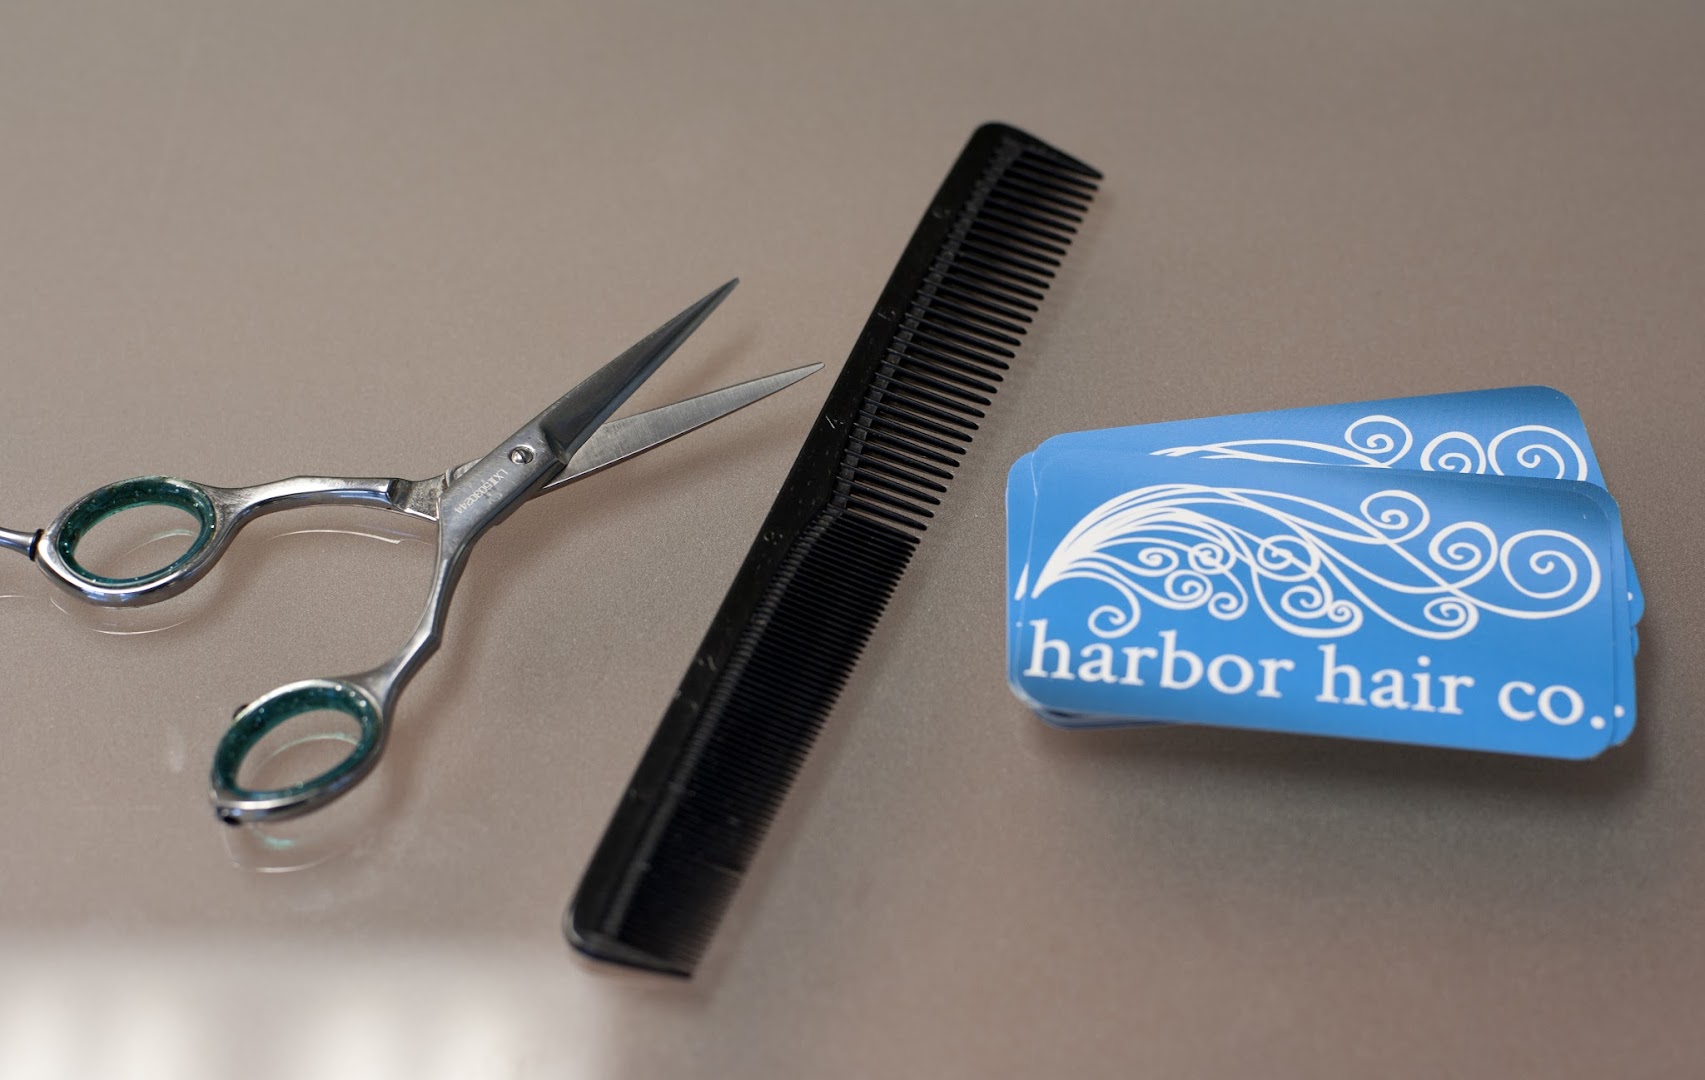 Harbor Hair Company